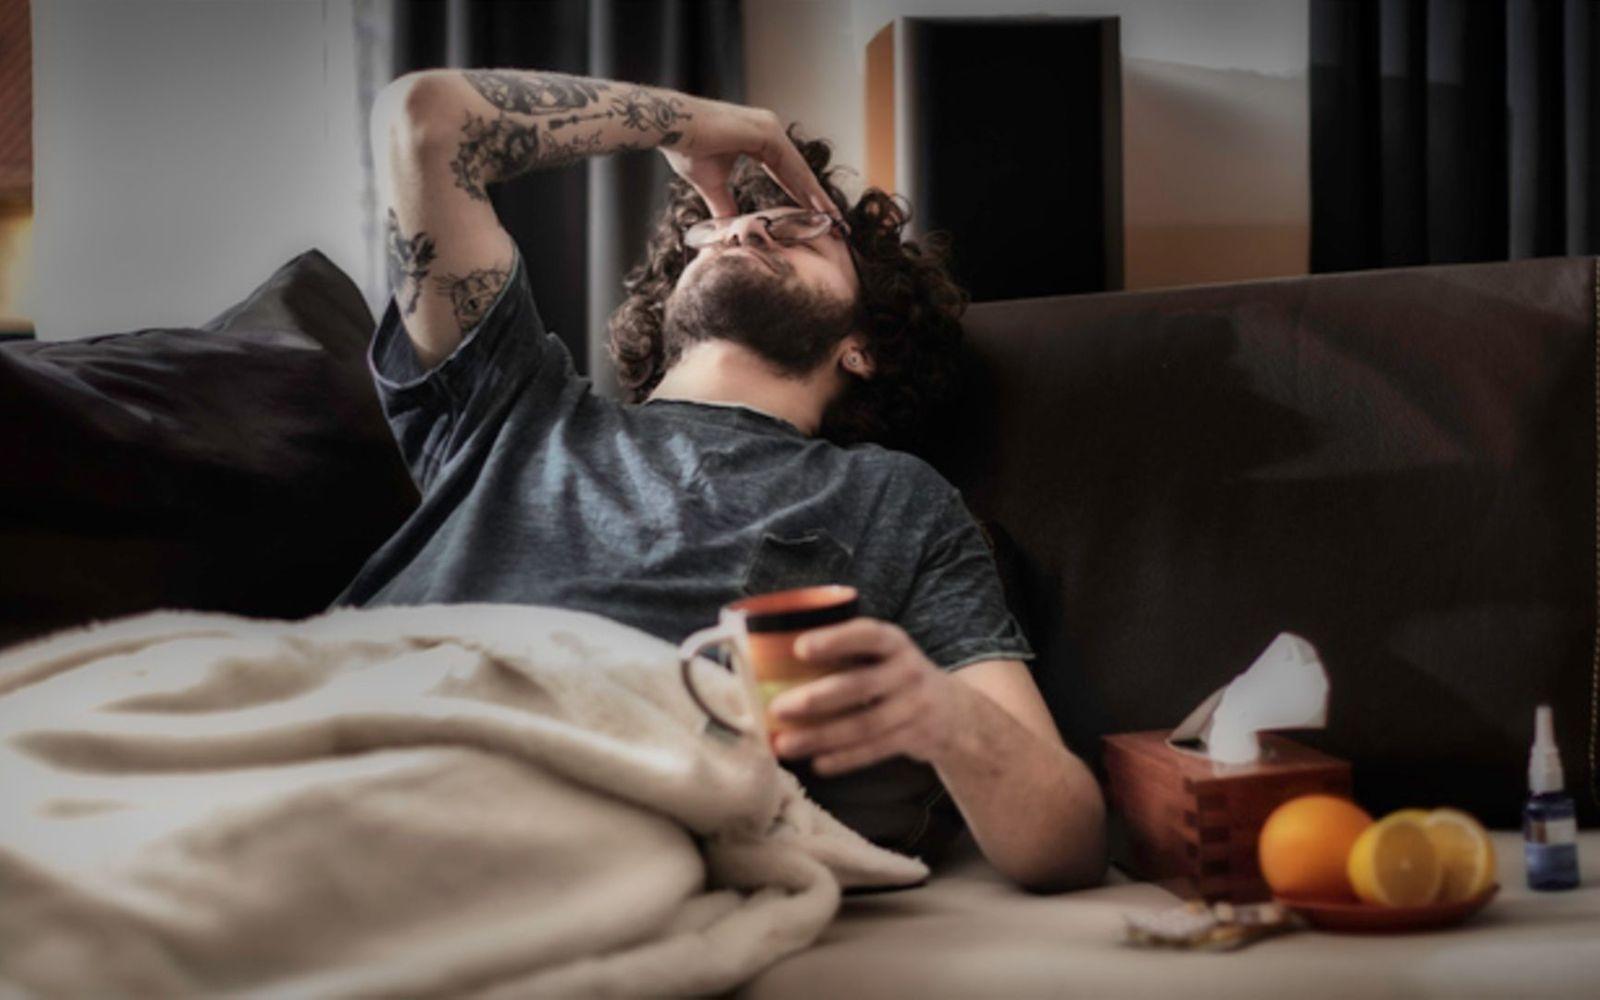 Fatigue Syndrom: Mann liegt erschöpft auf der Couch und fasst sich an die Stirn